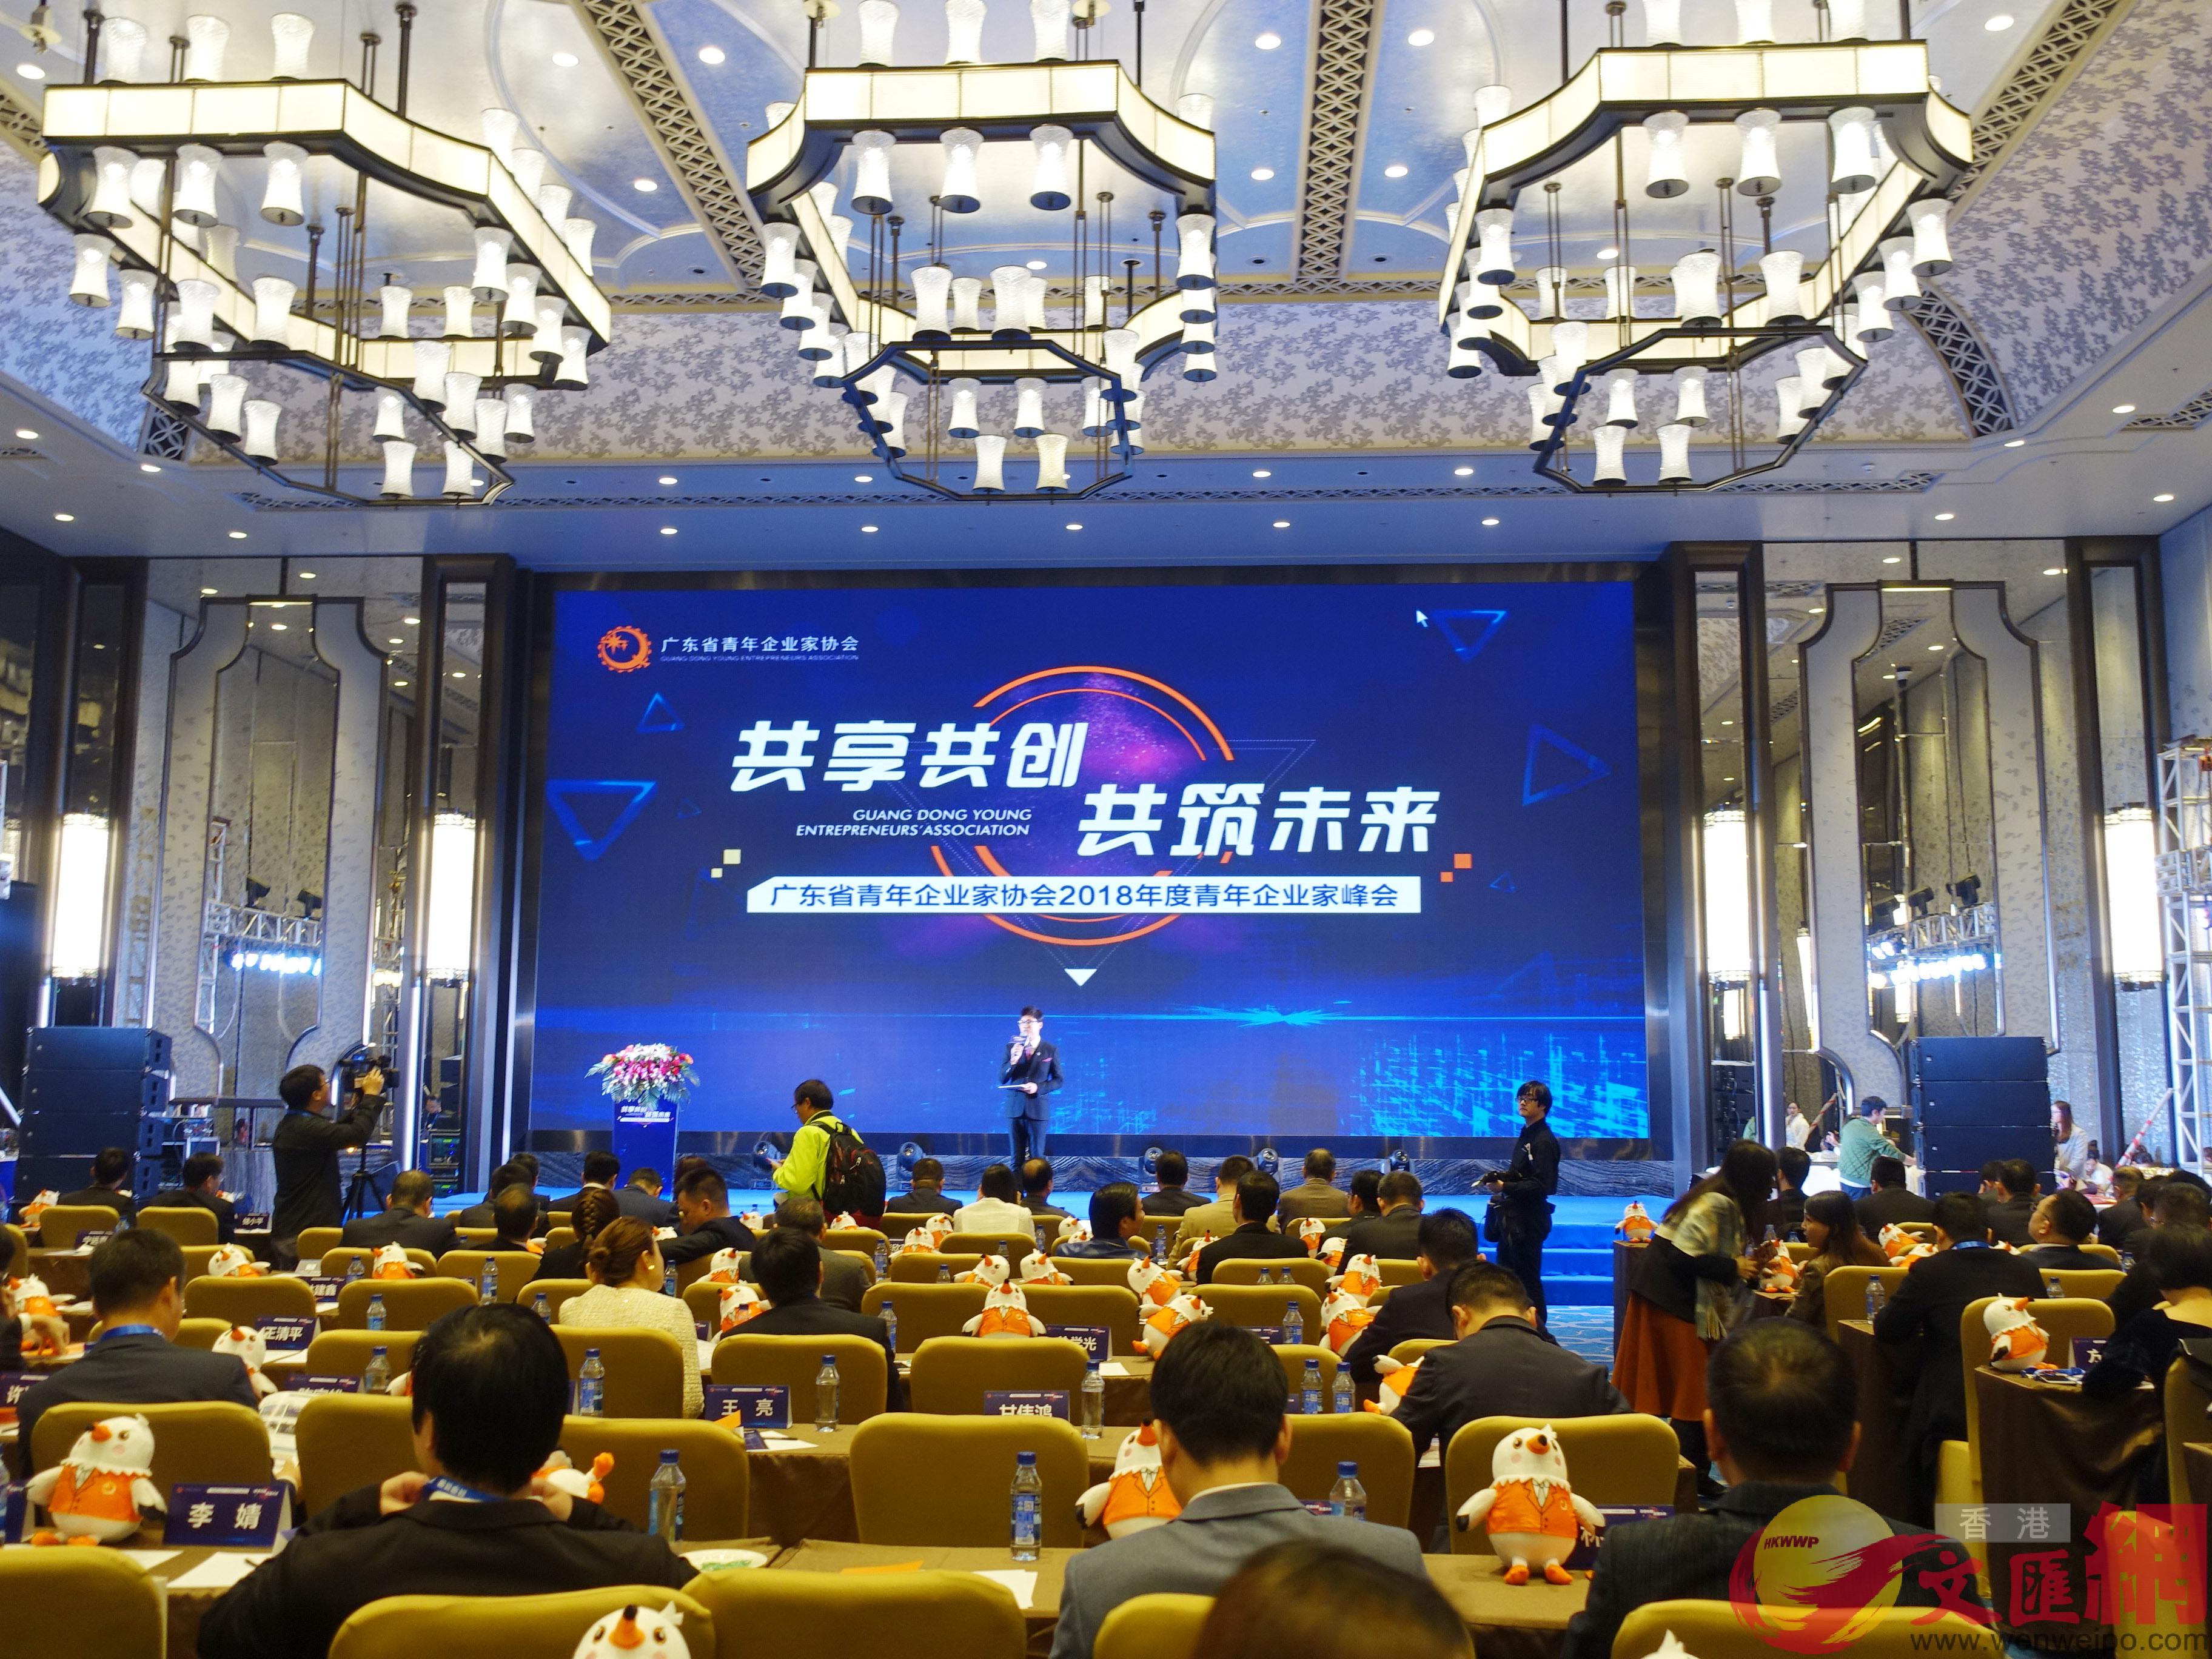 廣東省青年企業家協會2018年度青年企業家峰會5日在廣州舉行C]盧靜怡攝^